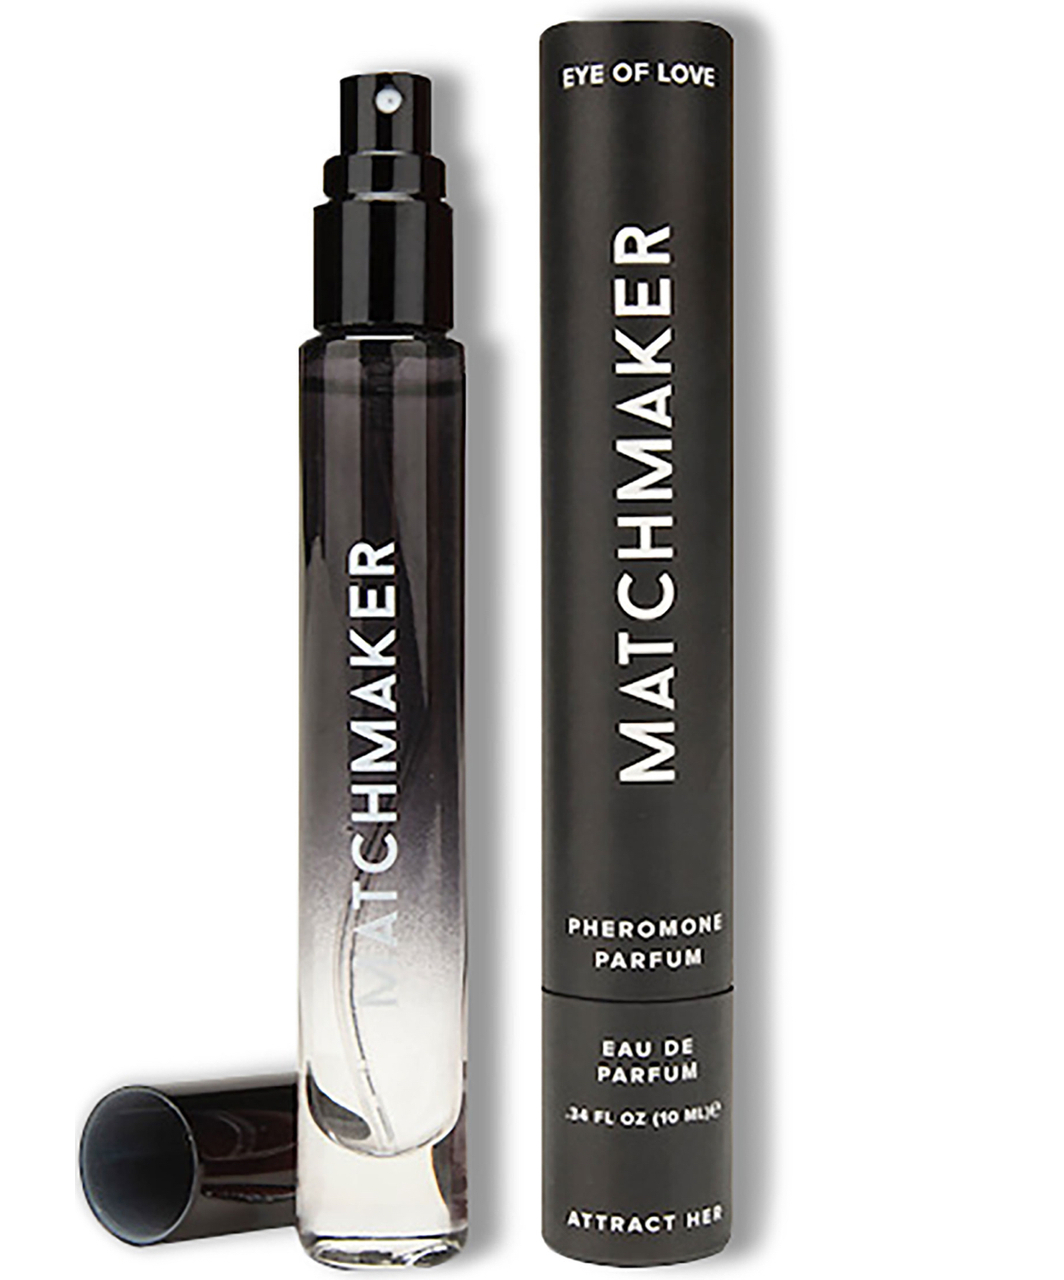 Eye Of Love x "Matchmaker Black Diamond" feromoninis parfumas, kad ją patrauktumėte (10 ml)